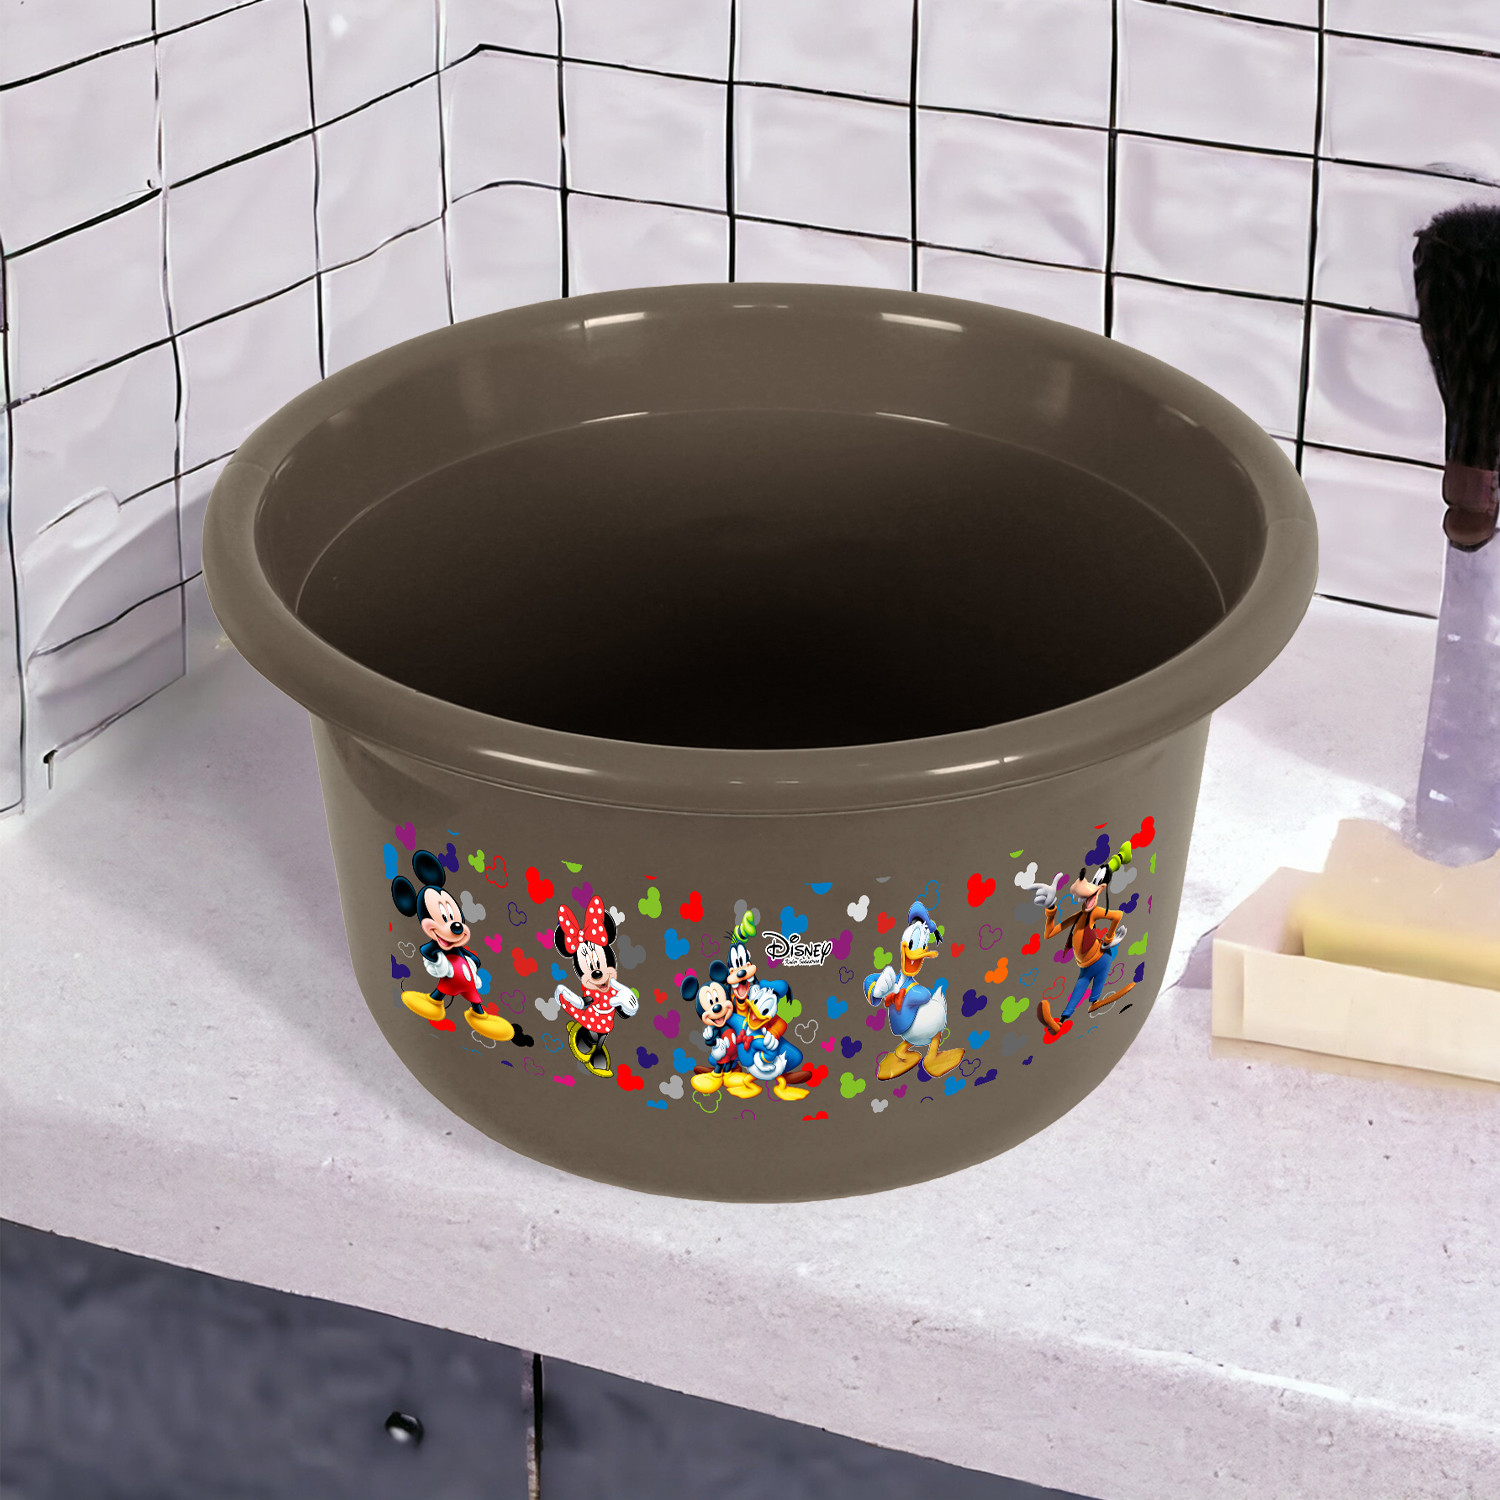 Kuber Industries Disney Bath Tub | Versatile Utility Gaint Tub | Plastic Bath Tub for Baby | Clothes Washing Tub For Bathroom | Feeding Pan Tub | TUB-25 LTR | Pack of 2 | Multi